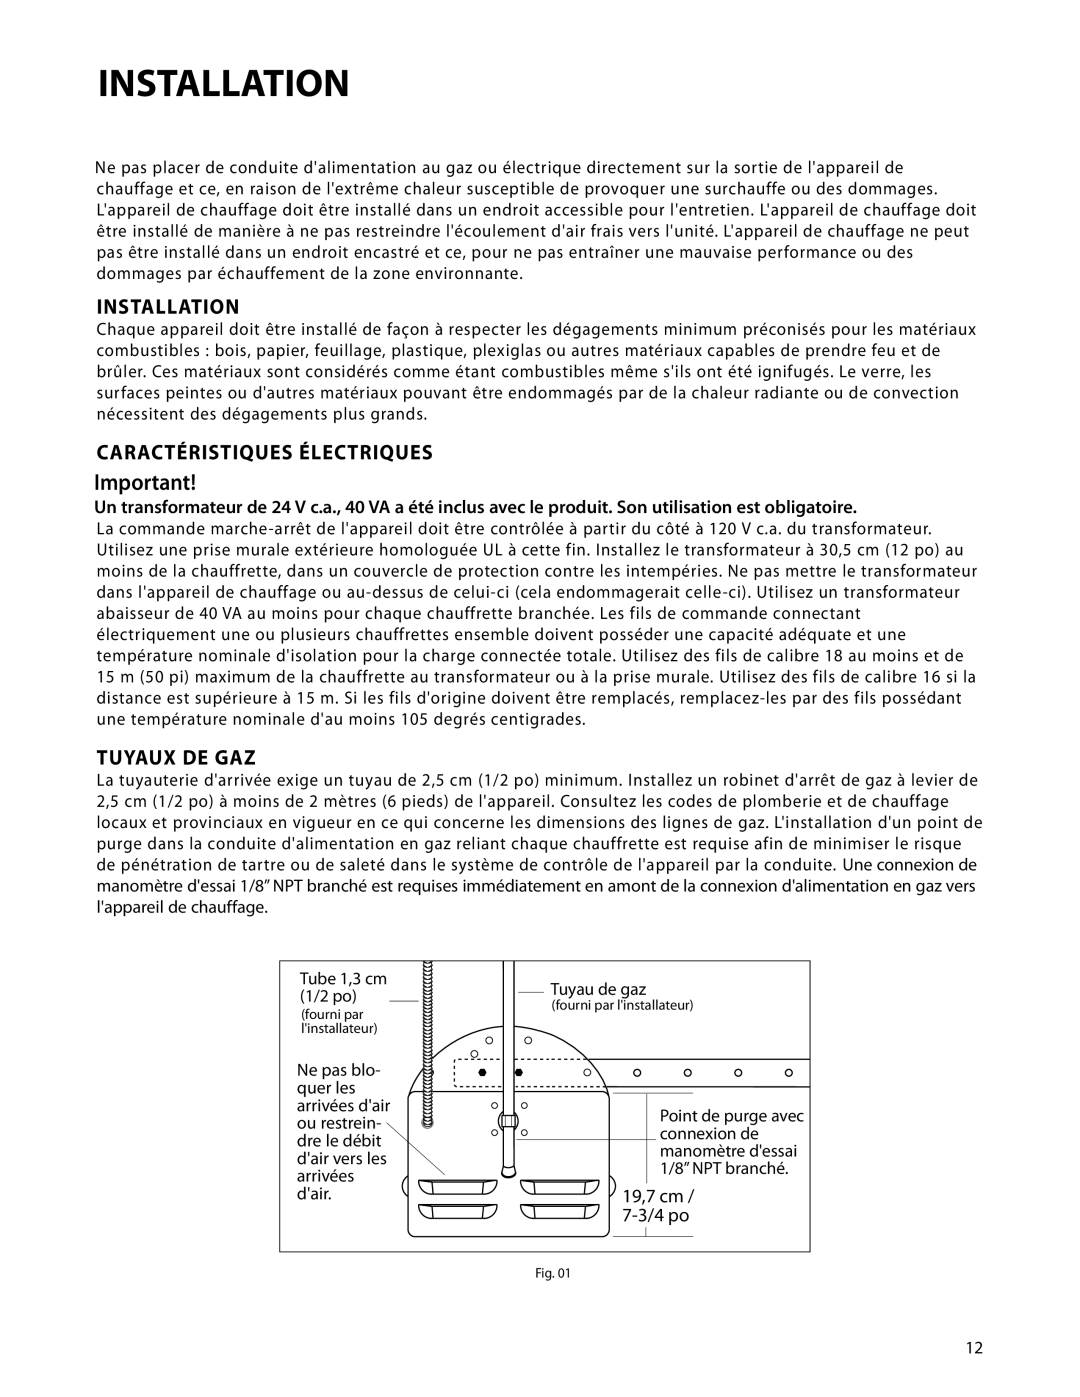 DCS DRH-48N manual Installation, Caractéristiques Électriques, Tuyaux De Gaz, 19,7 cm, 7-3/4 po 